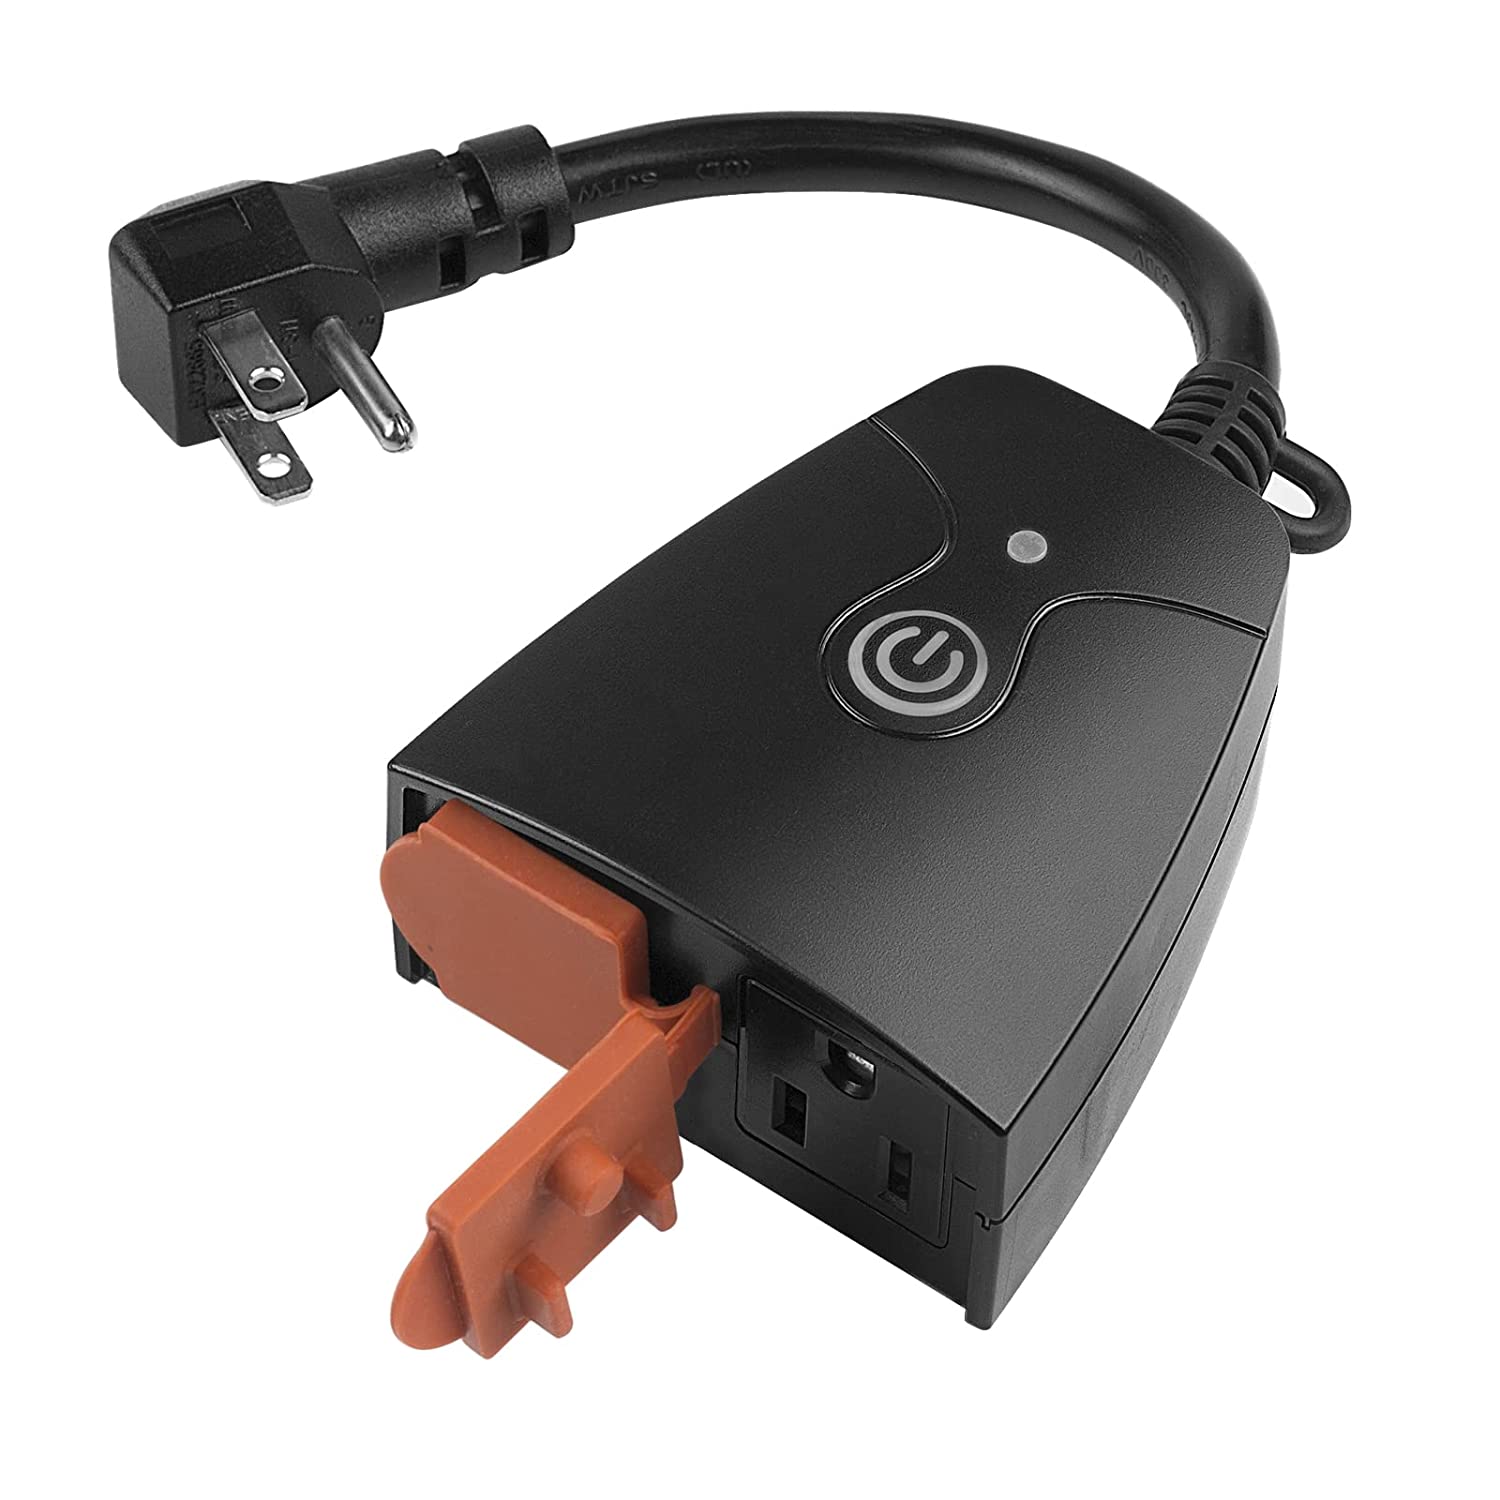 3 Pack WiFi Smart Plug APP Remote Control Timer Outlet Power Socket US Plug